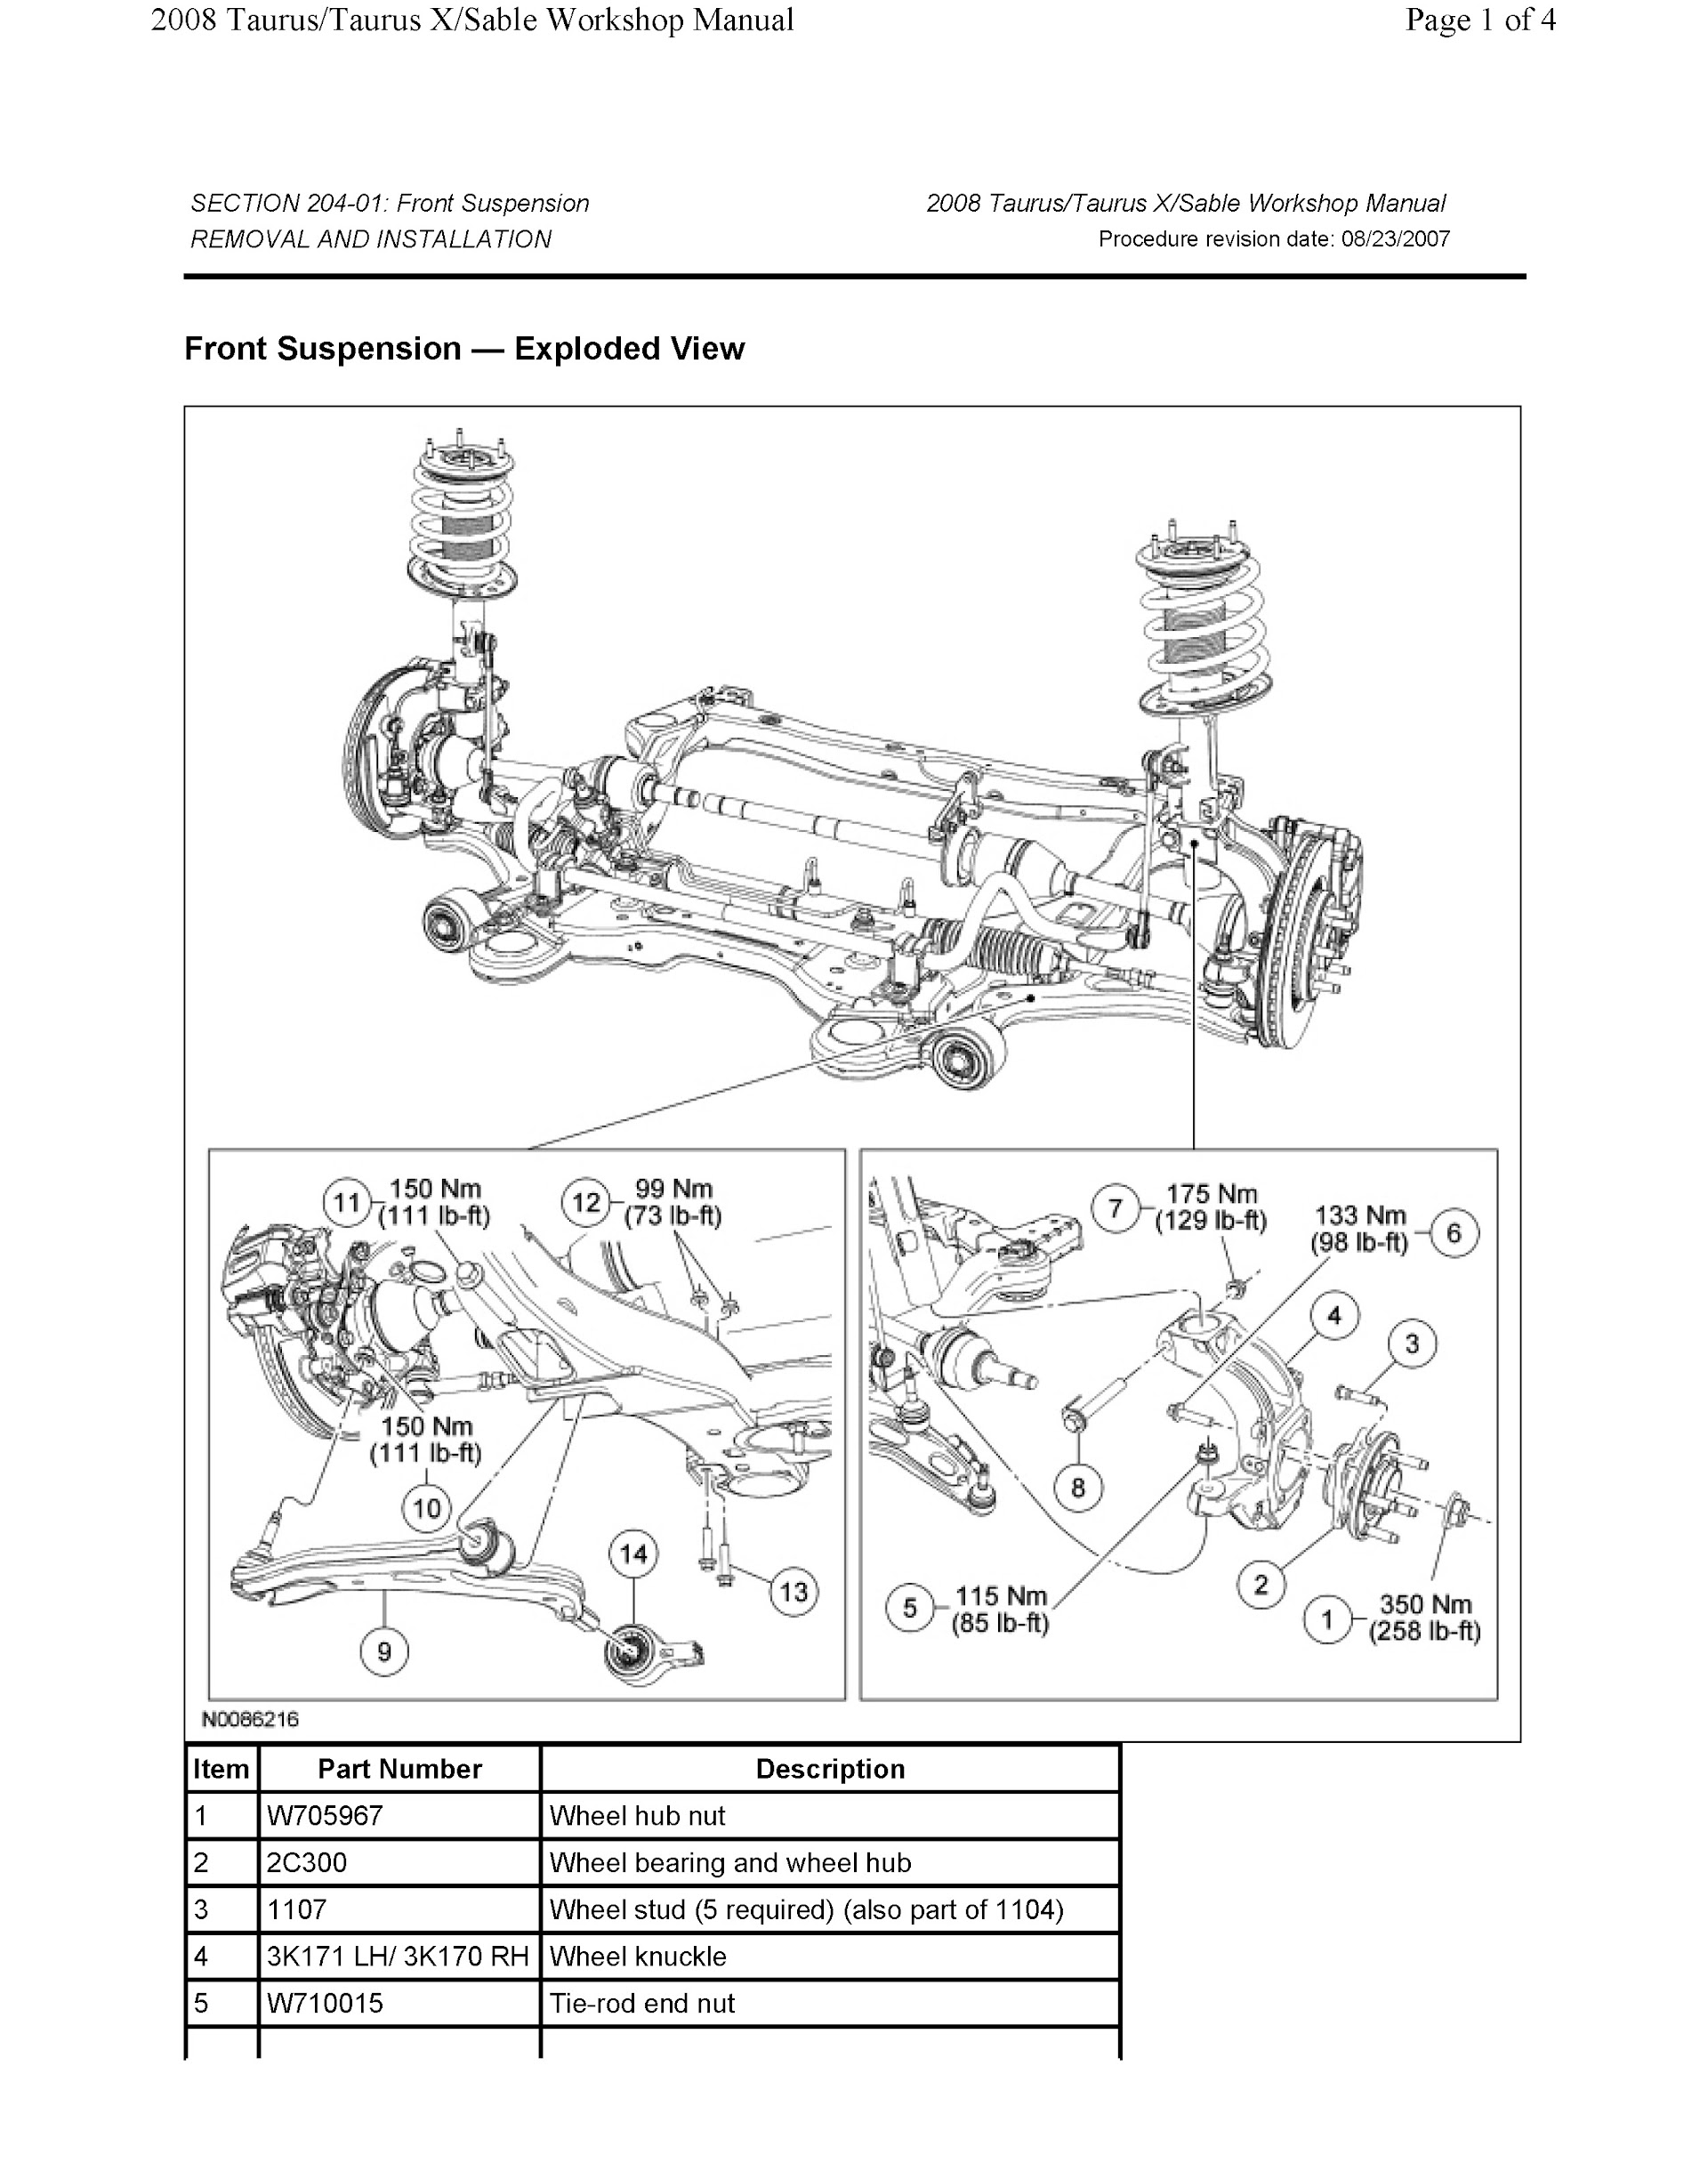 Download 2008 Ford Taurus, Taurus X, Mercury Sable Repair Manual